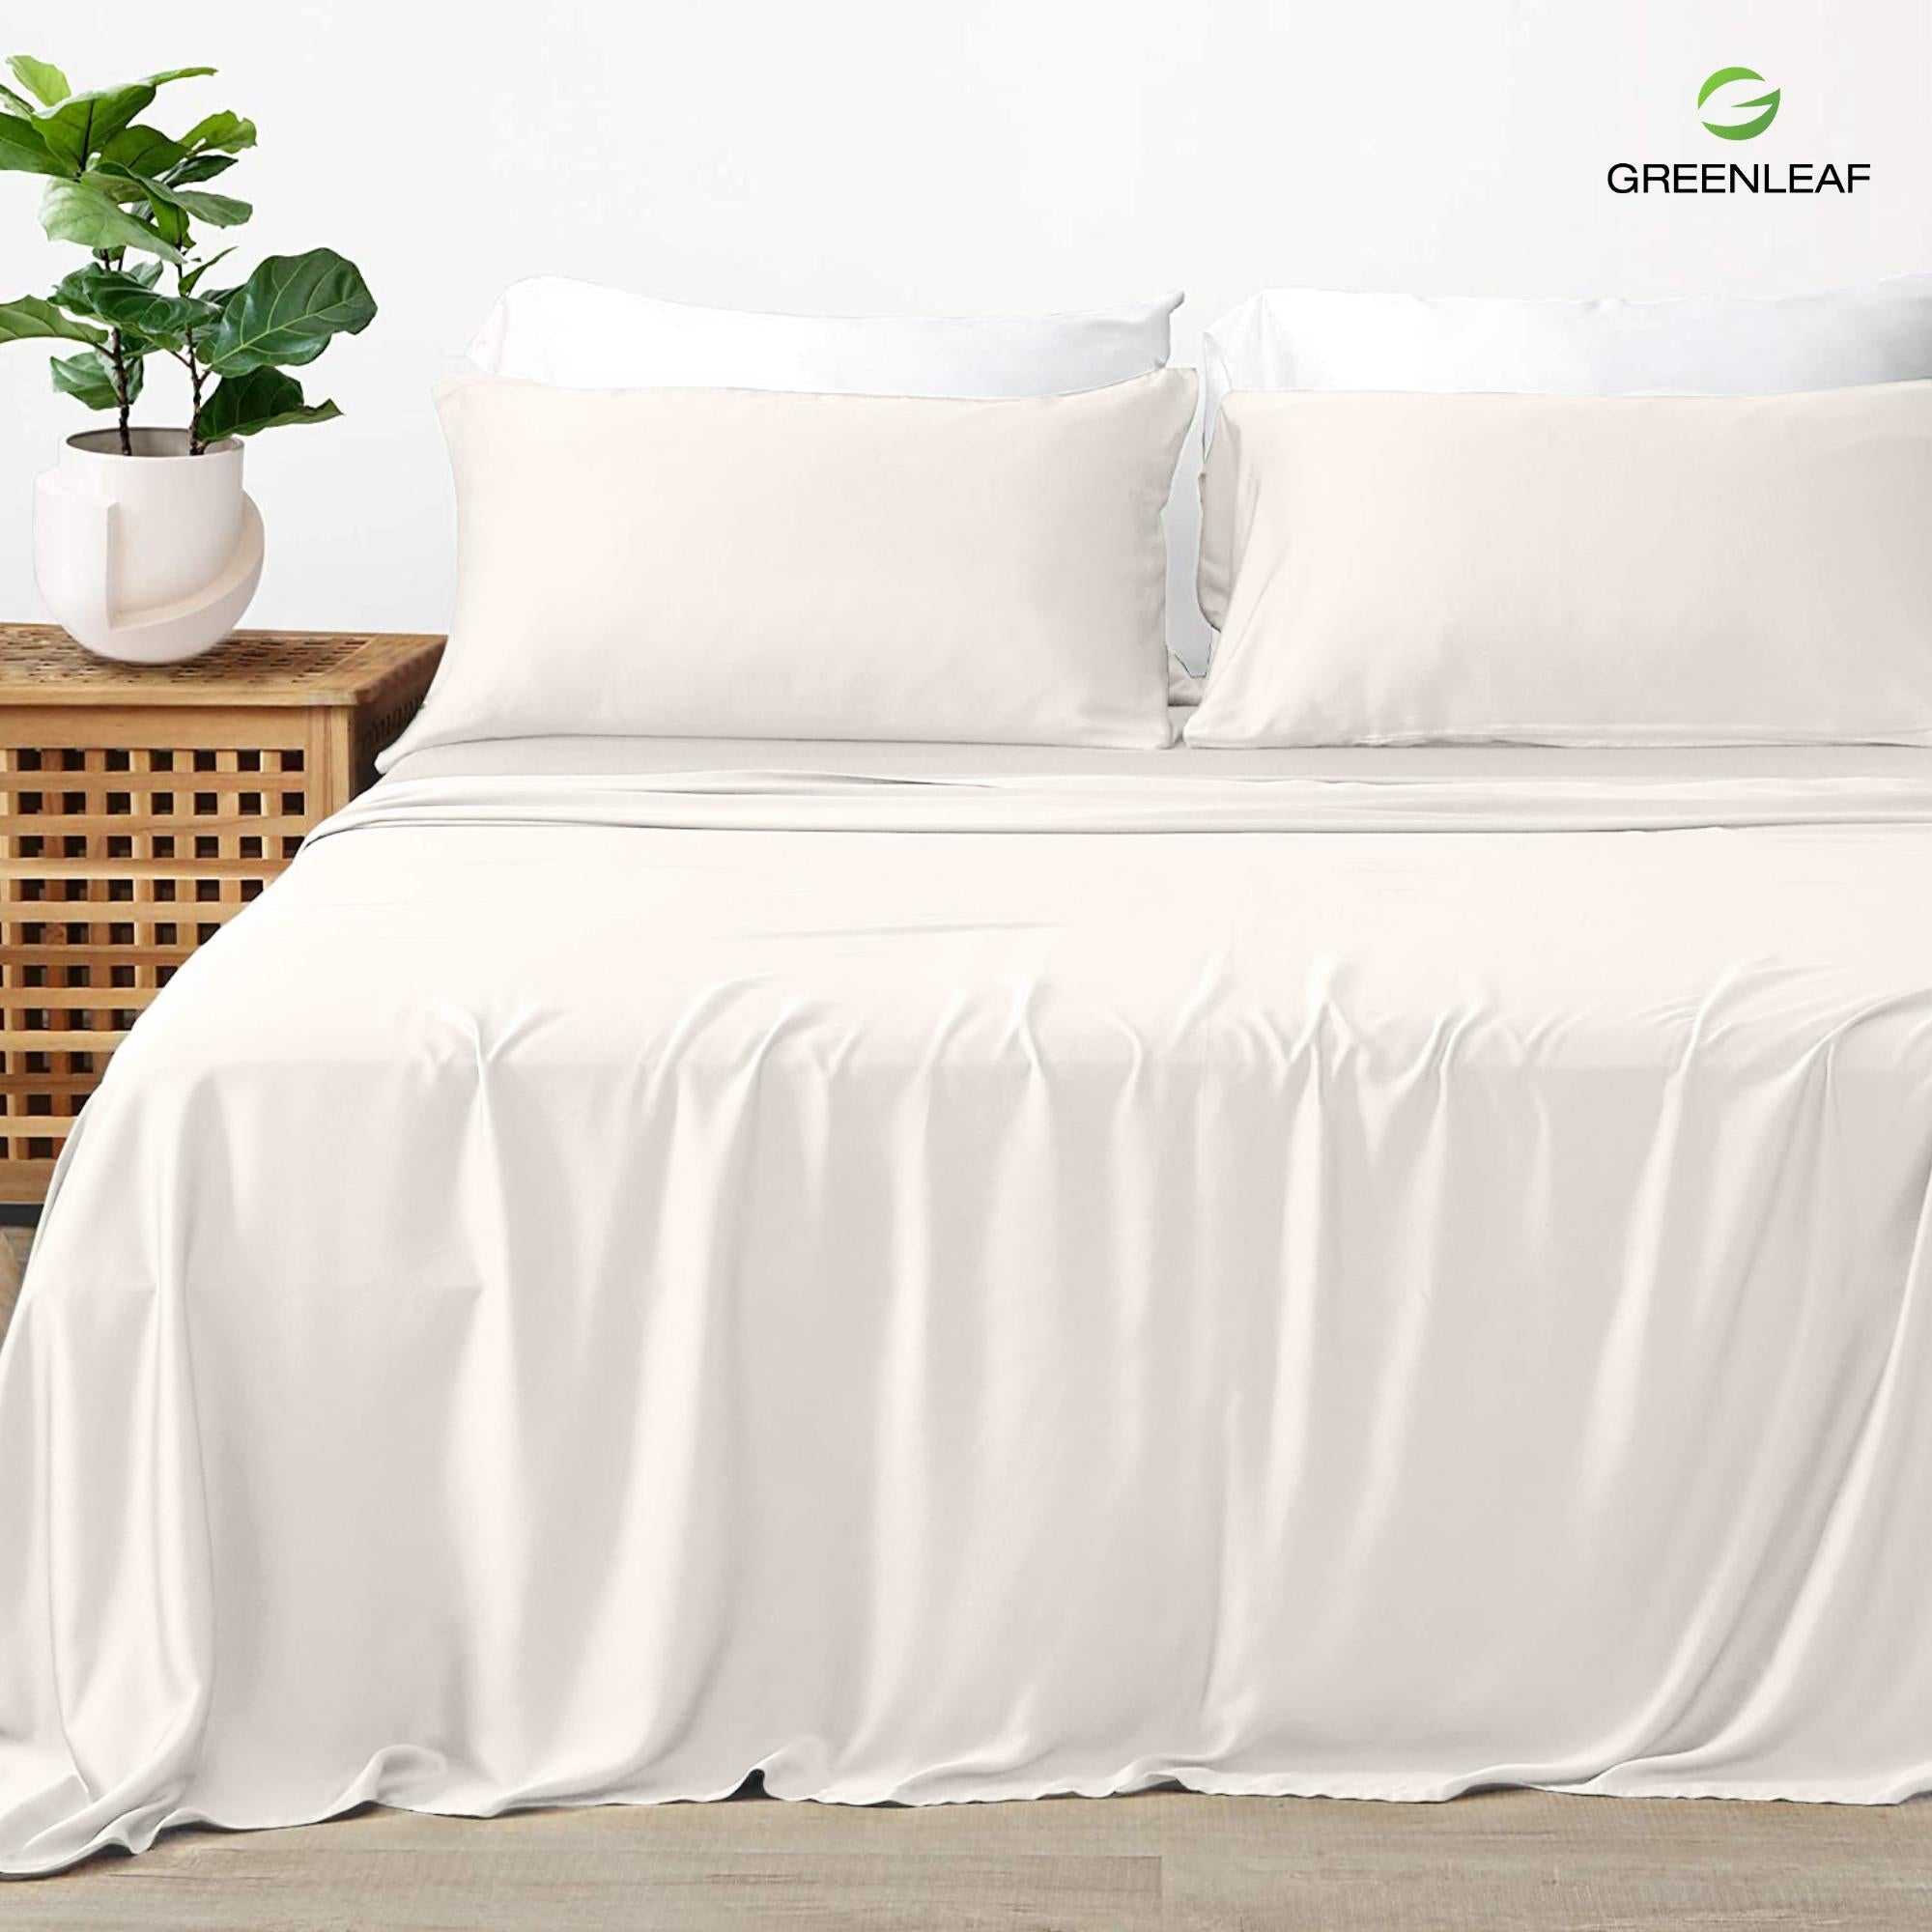 Greenleaf - Luxury Organic Bamboo Sheets Set | Ivory